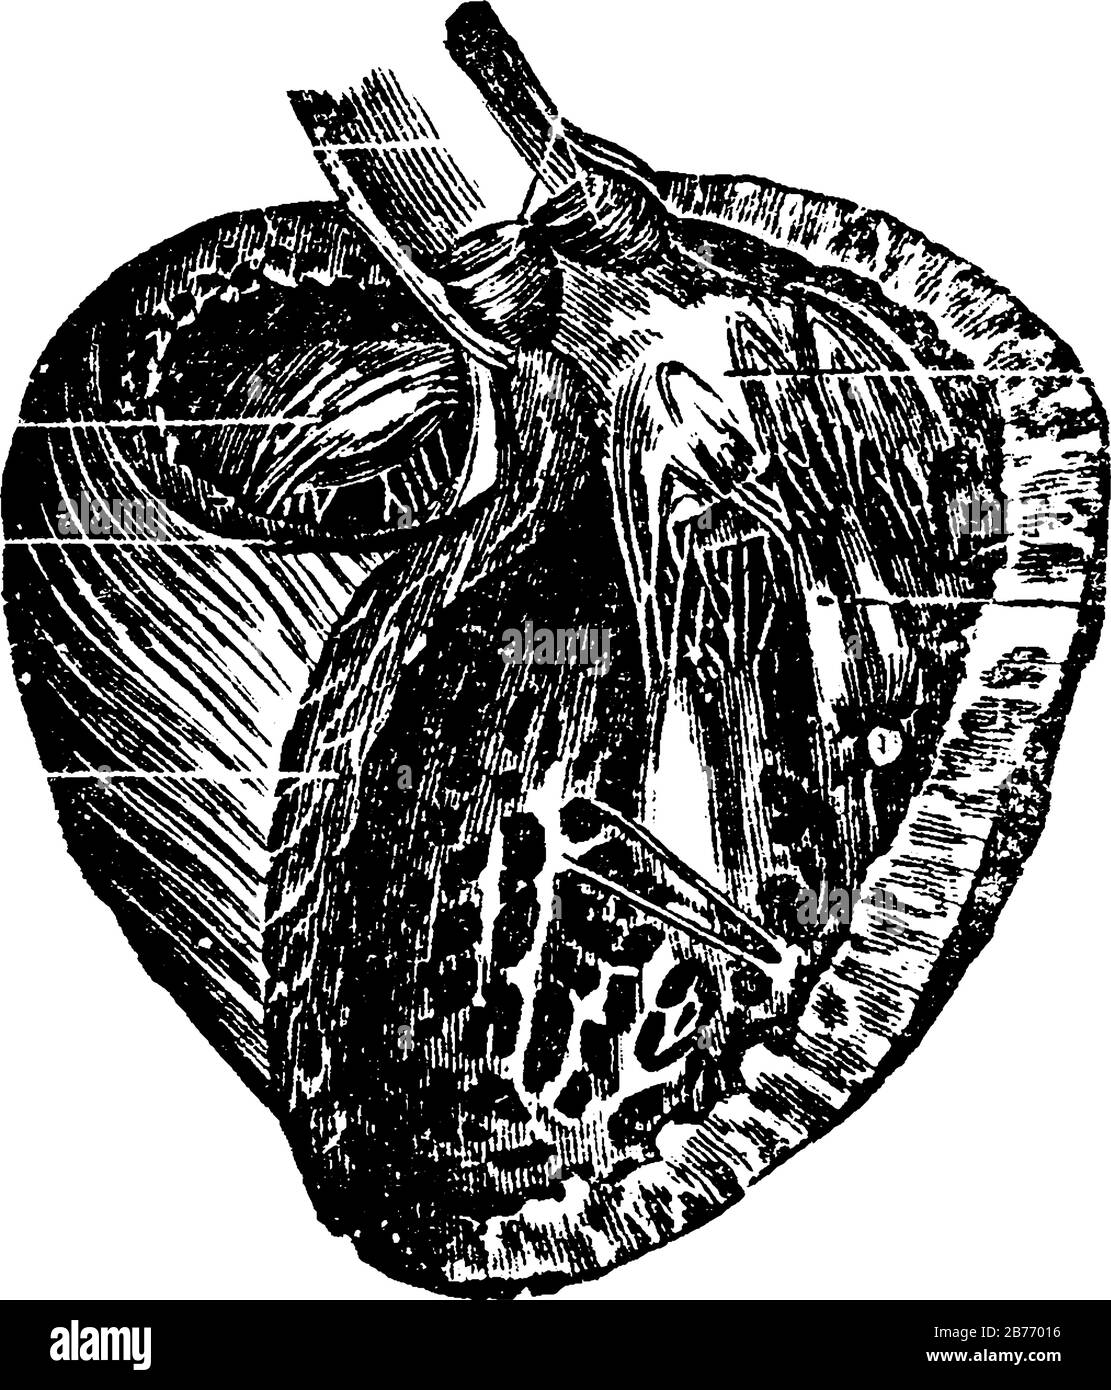 Vue des trois quarts du ventricule gauche après avoir retiré les murs avant, elle affiche trois images de coeur en lui, dessin de lignes anciennes ou gravure Illustration de Vecteur